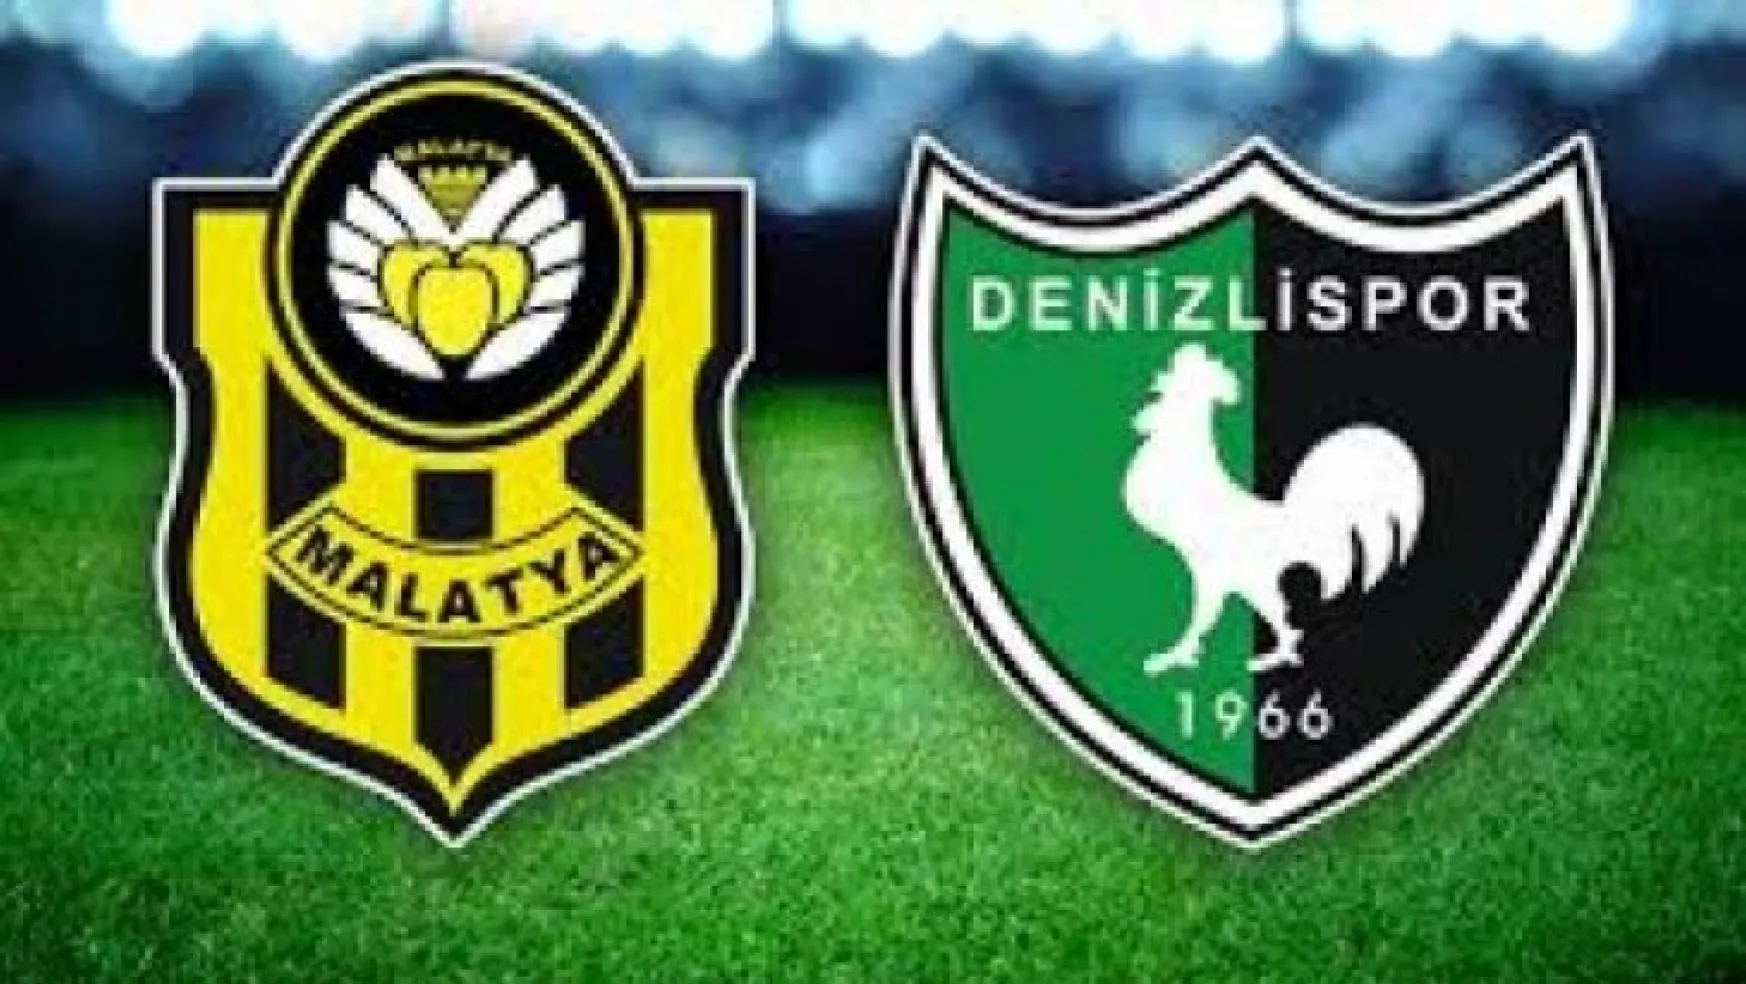 Yeni Malatyaspor 2-0 Y. Denizlispor